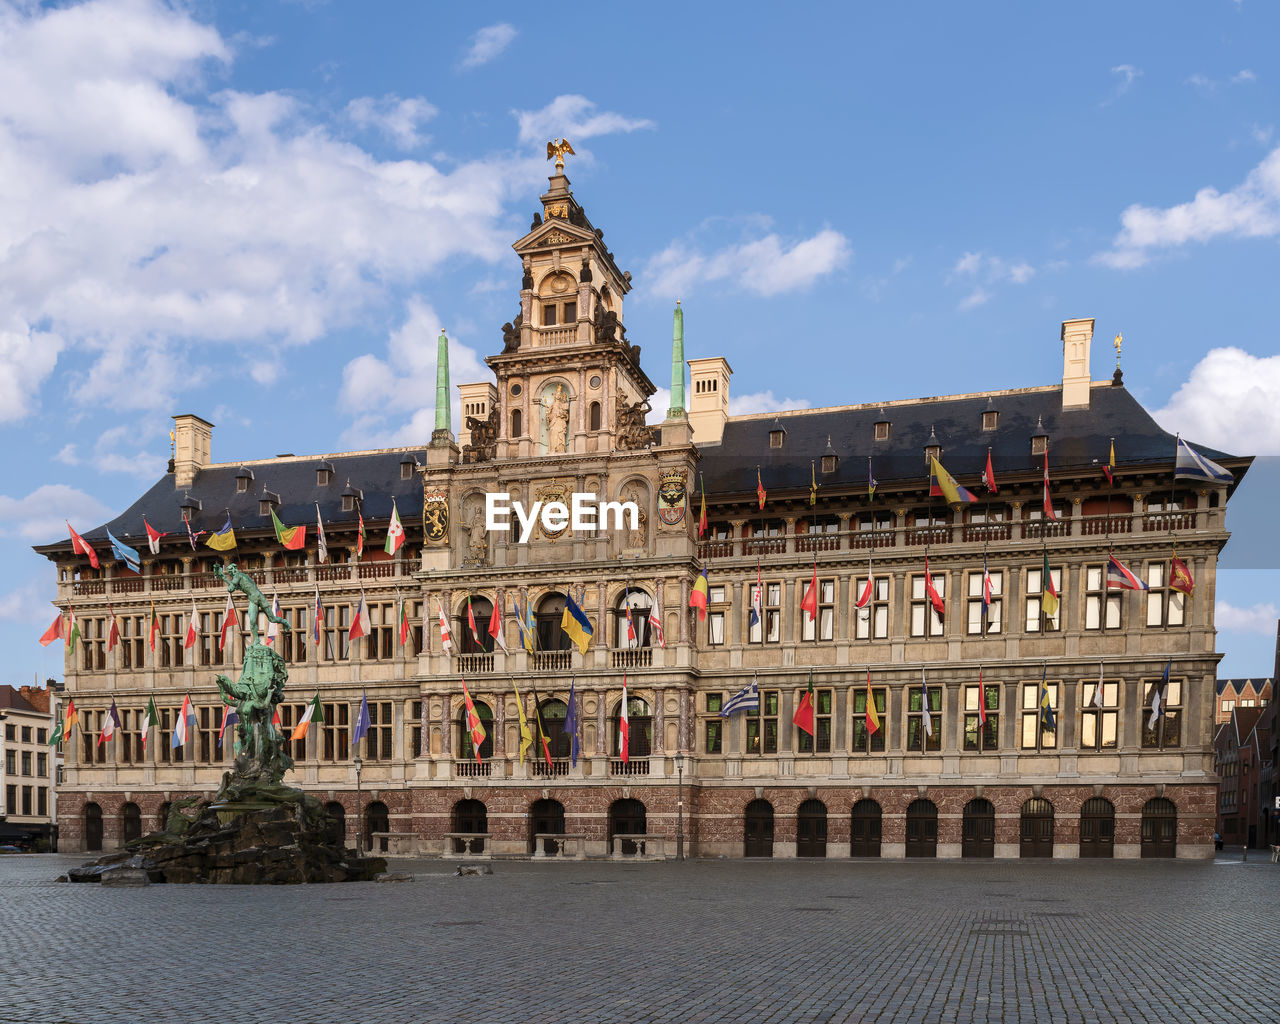 The majestic city hall of antwerpen, flanders, belgium